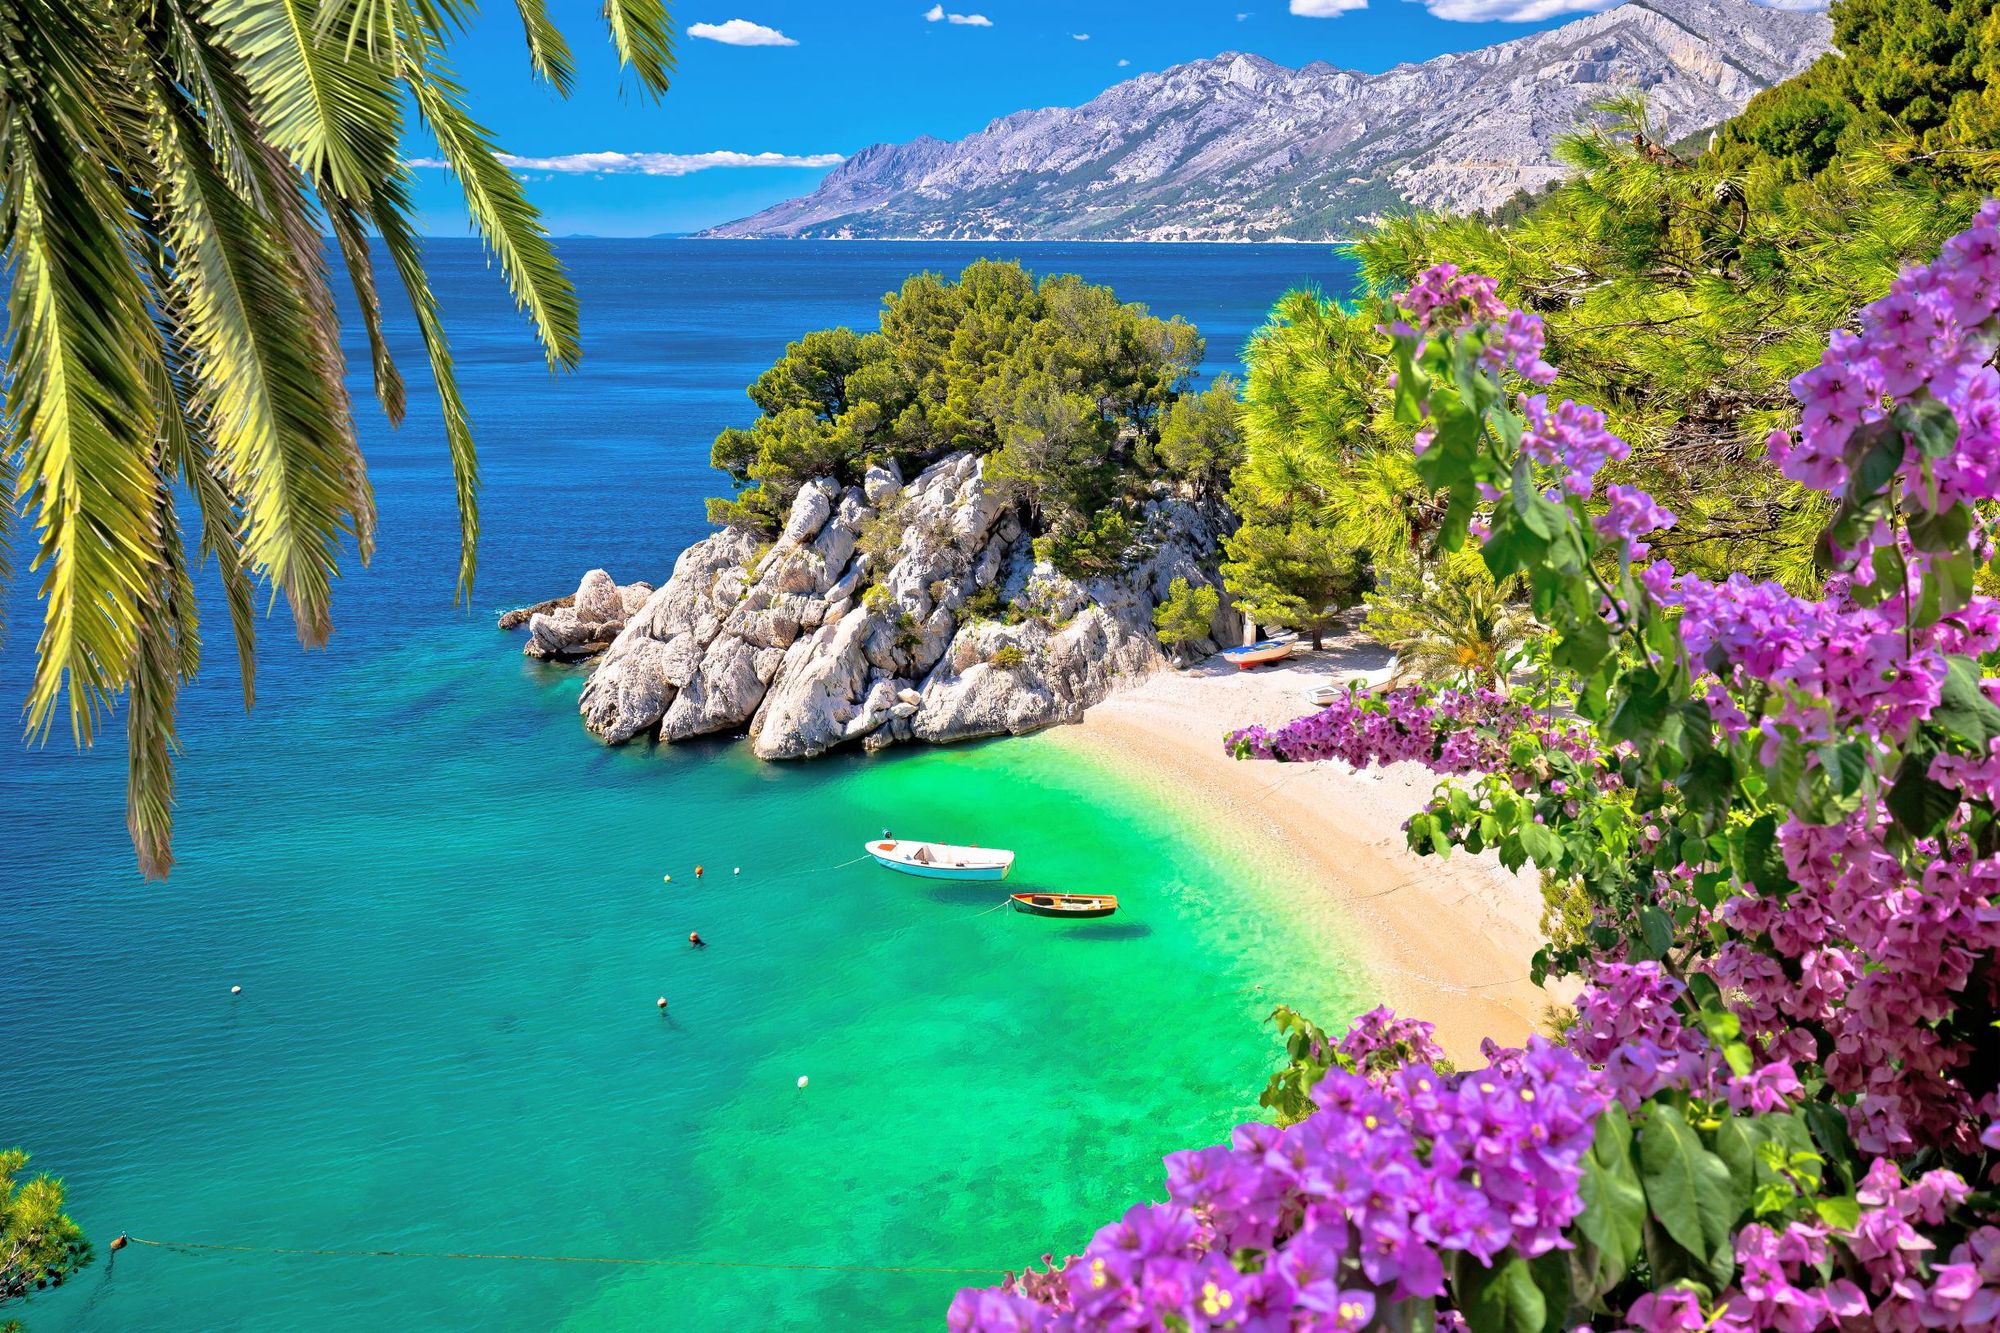 The idyllic waters of the Dalmatian Coast in Croatia. Photo: Getty